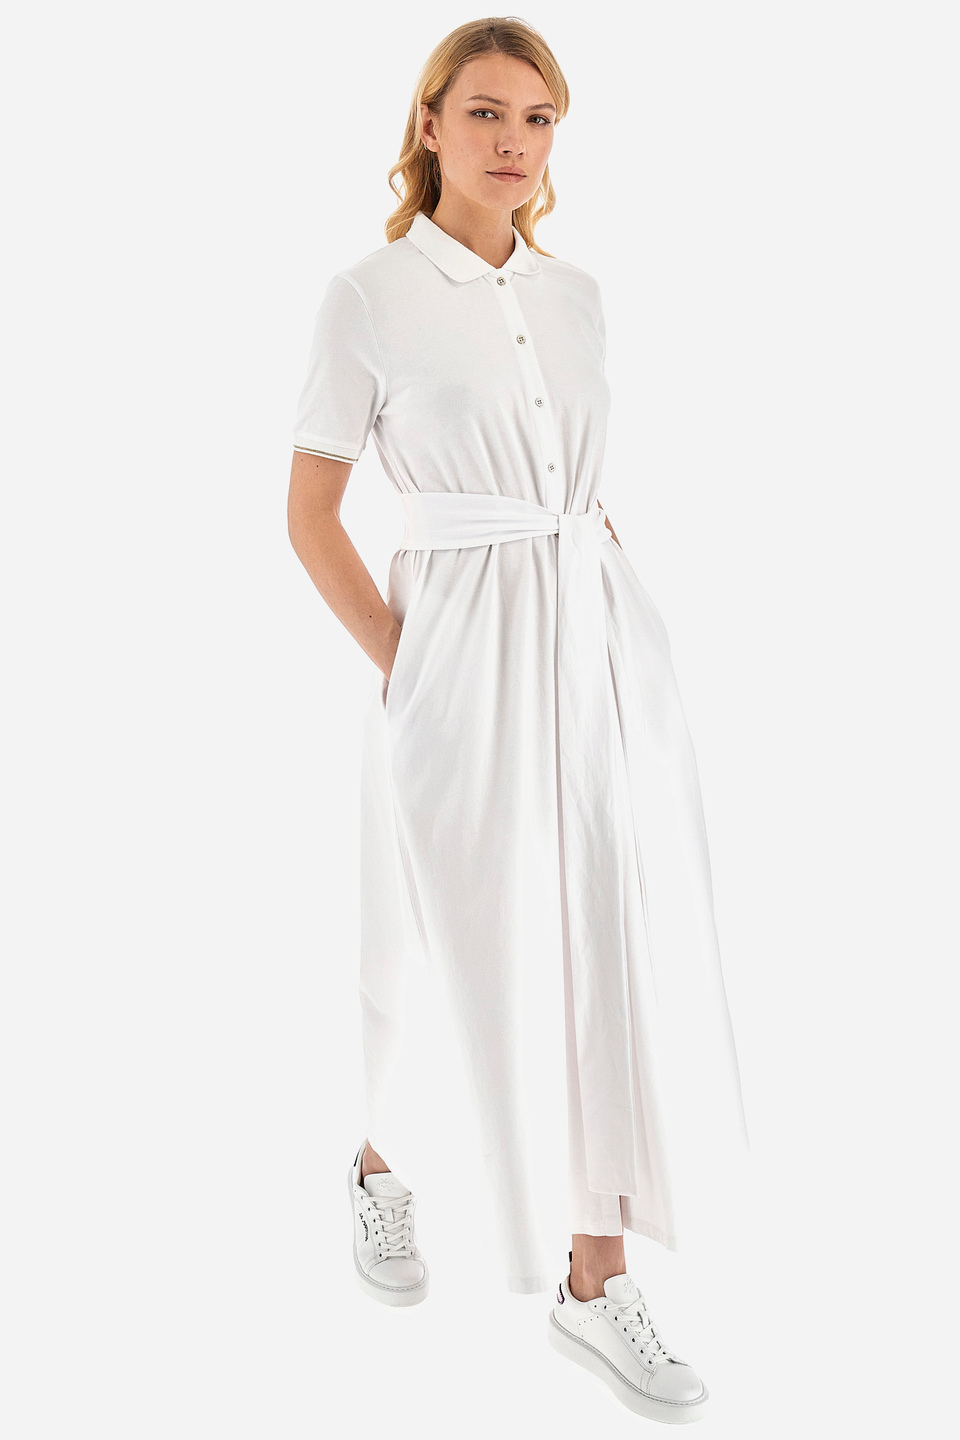 Robe longue femme en polycoton, manches courtes- | La Martina - Official Online Shop